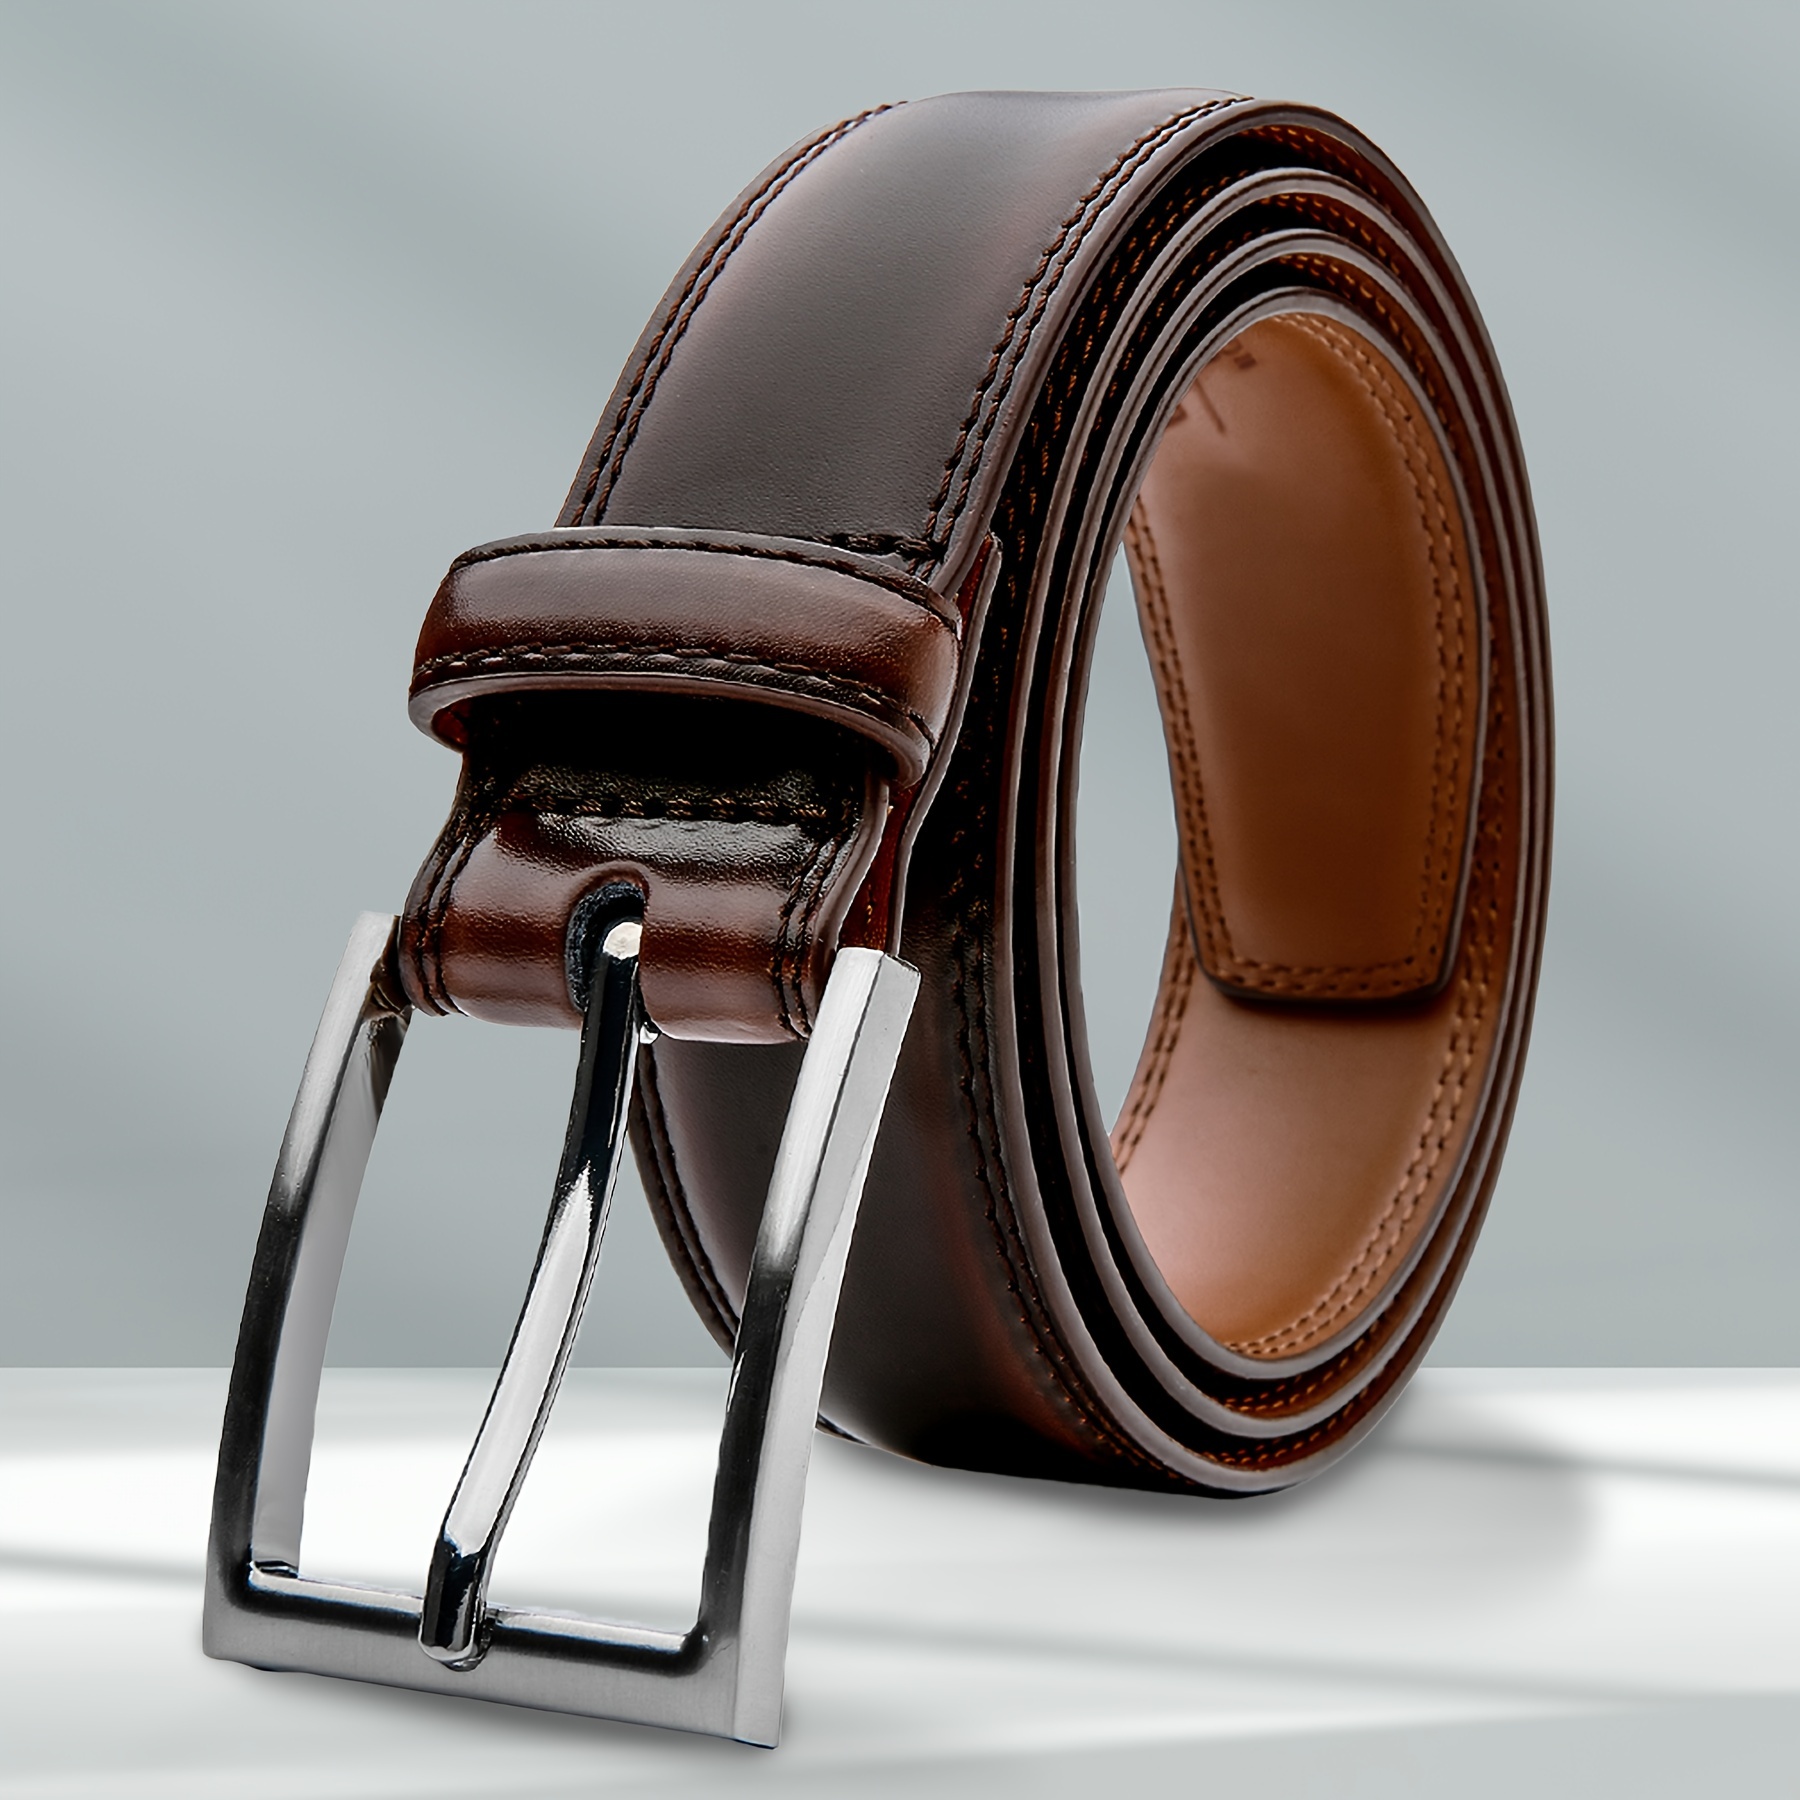 Cinturón de cuero occidental informal o de trabajo con tejido de cesta  resistente para hombre de 1 3/4 de ancho -  México